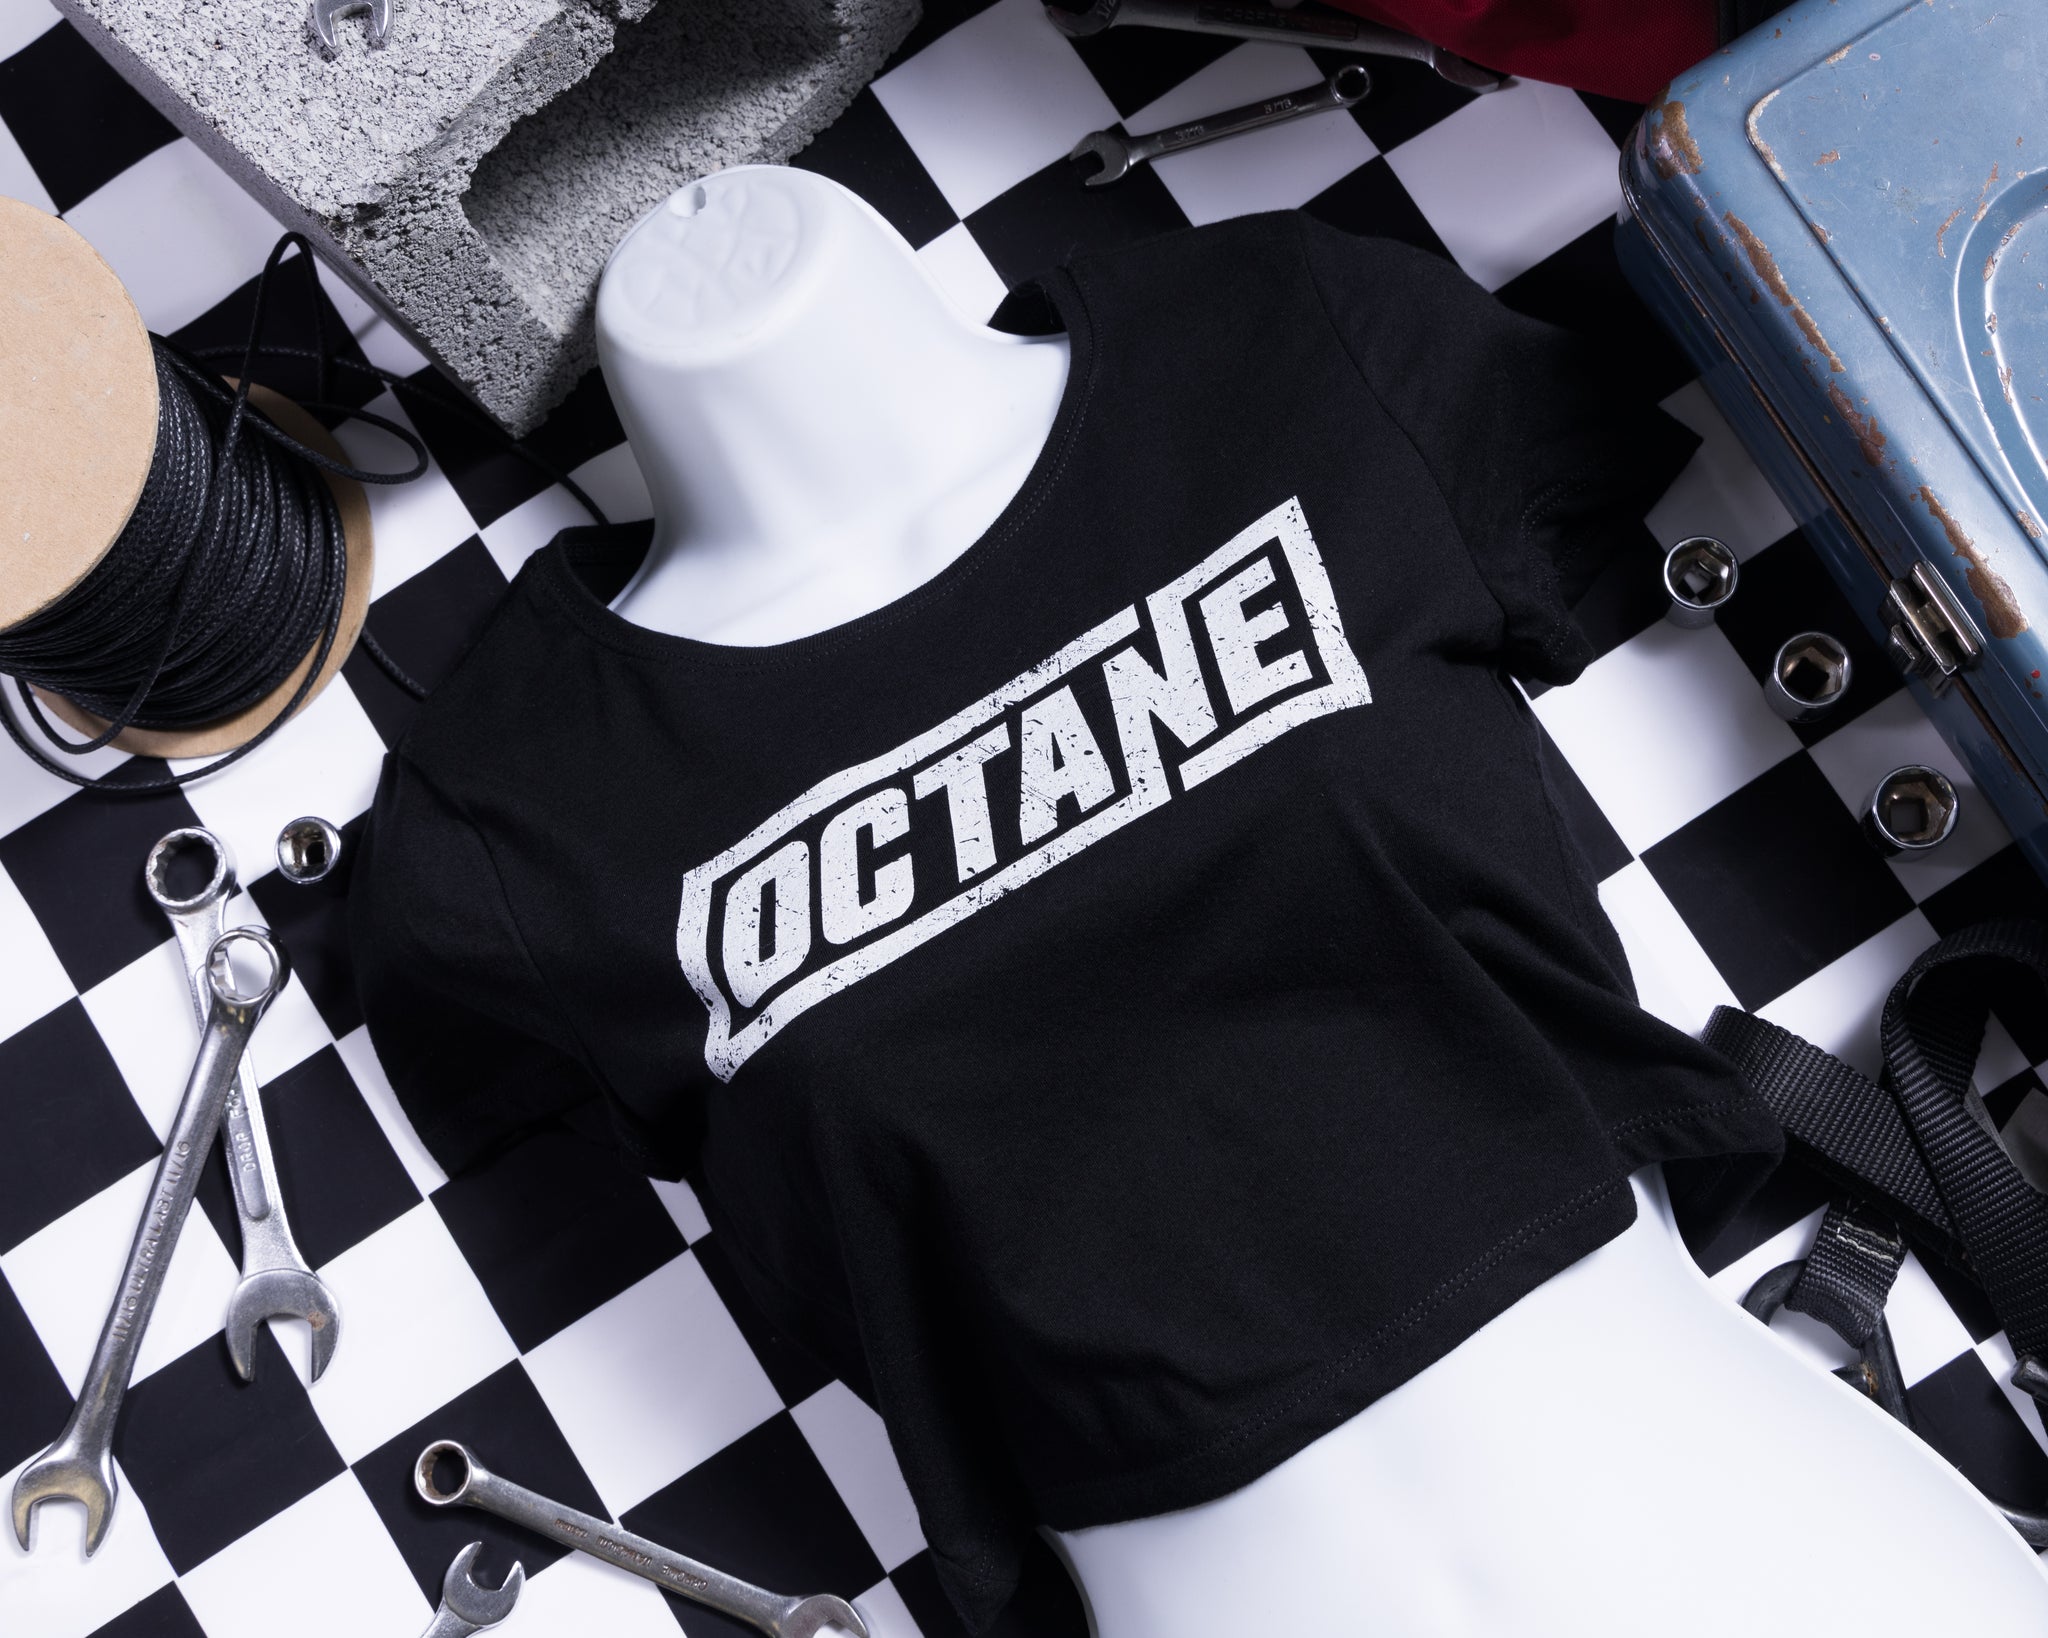 Octane: Crop T-shirt